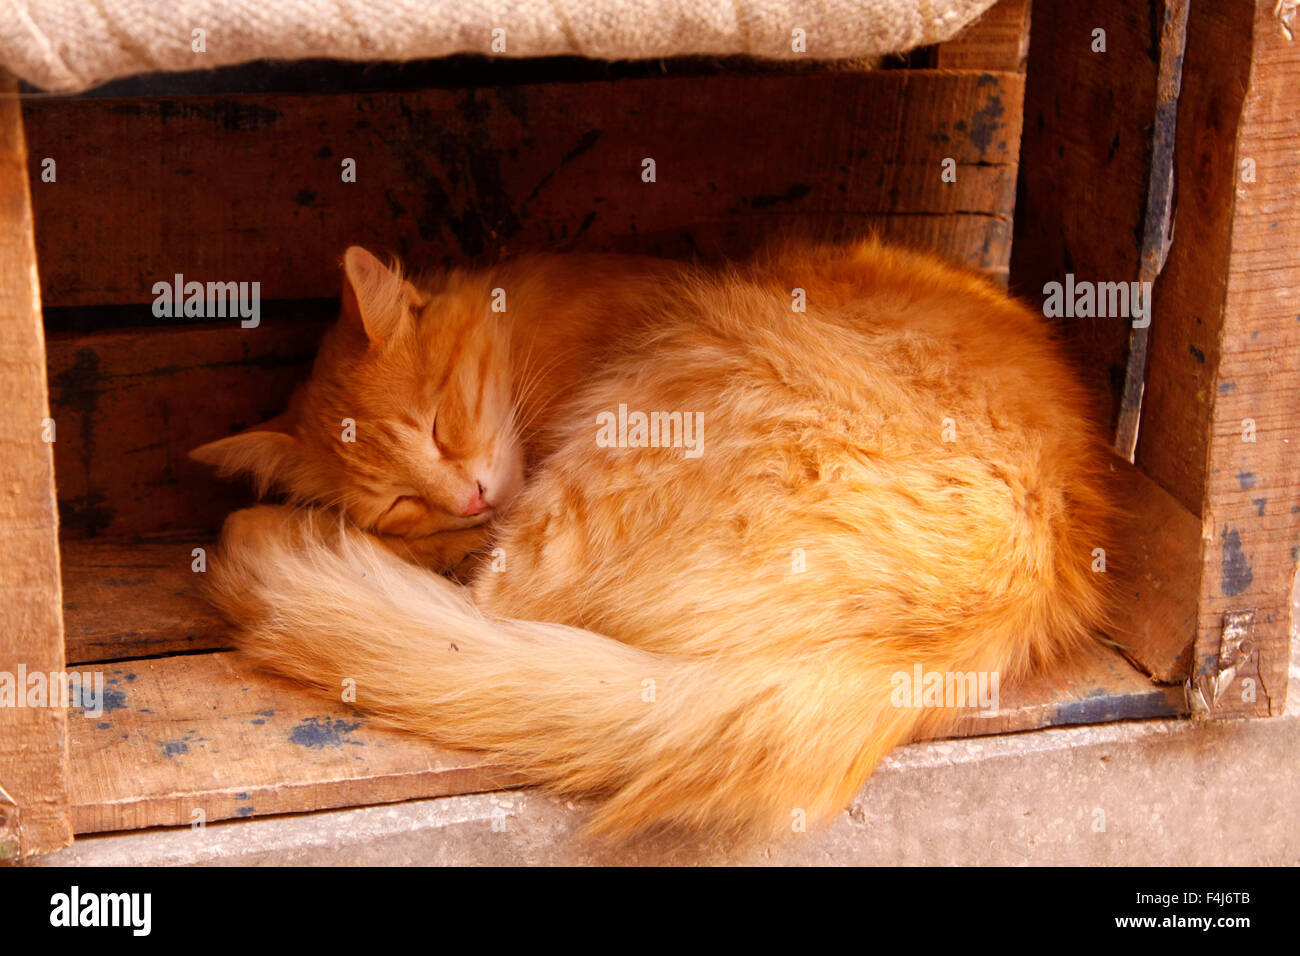 Sommeil de chat dans une boîte dans la médina, Marrakech, Maroc Banque D'Images